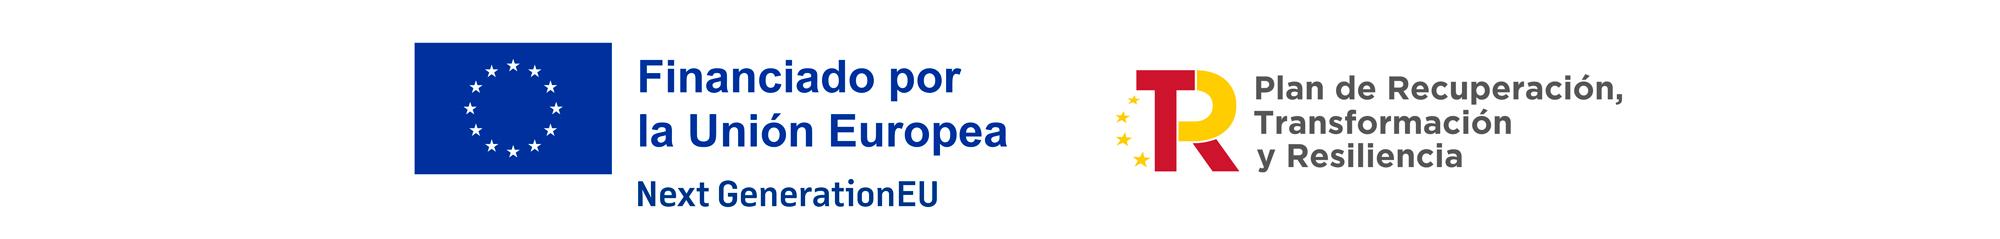 Banner Union Europea - Plan Recuperación, Transformación, Resiliencia